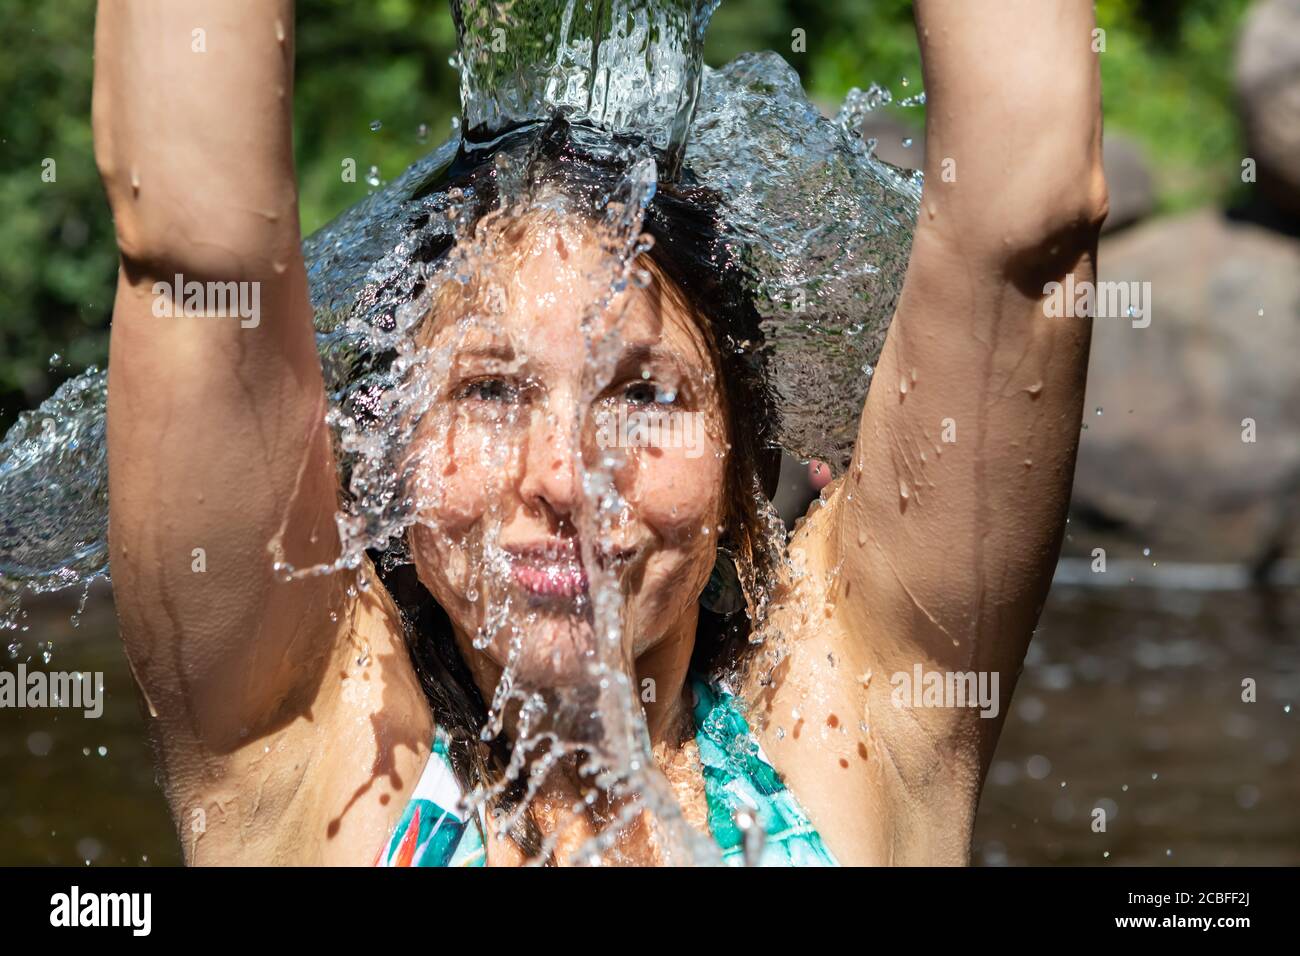 Nahaufnahme des Gesichts einer jungen Frau mit den Armen nach oben, die aus einem Glasbehälter in einem Bergfluss Wasser auf sich selbst gießt und die Kamera anlächelt Stockfoto